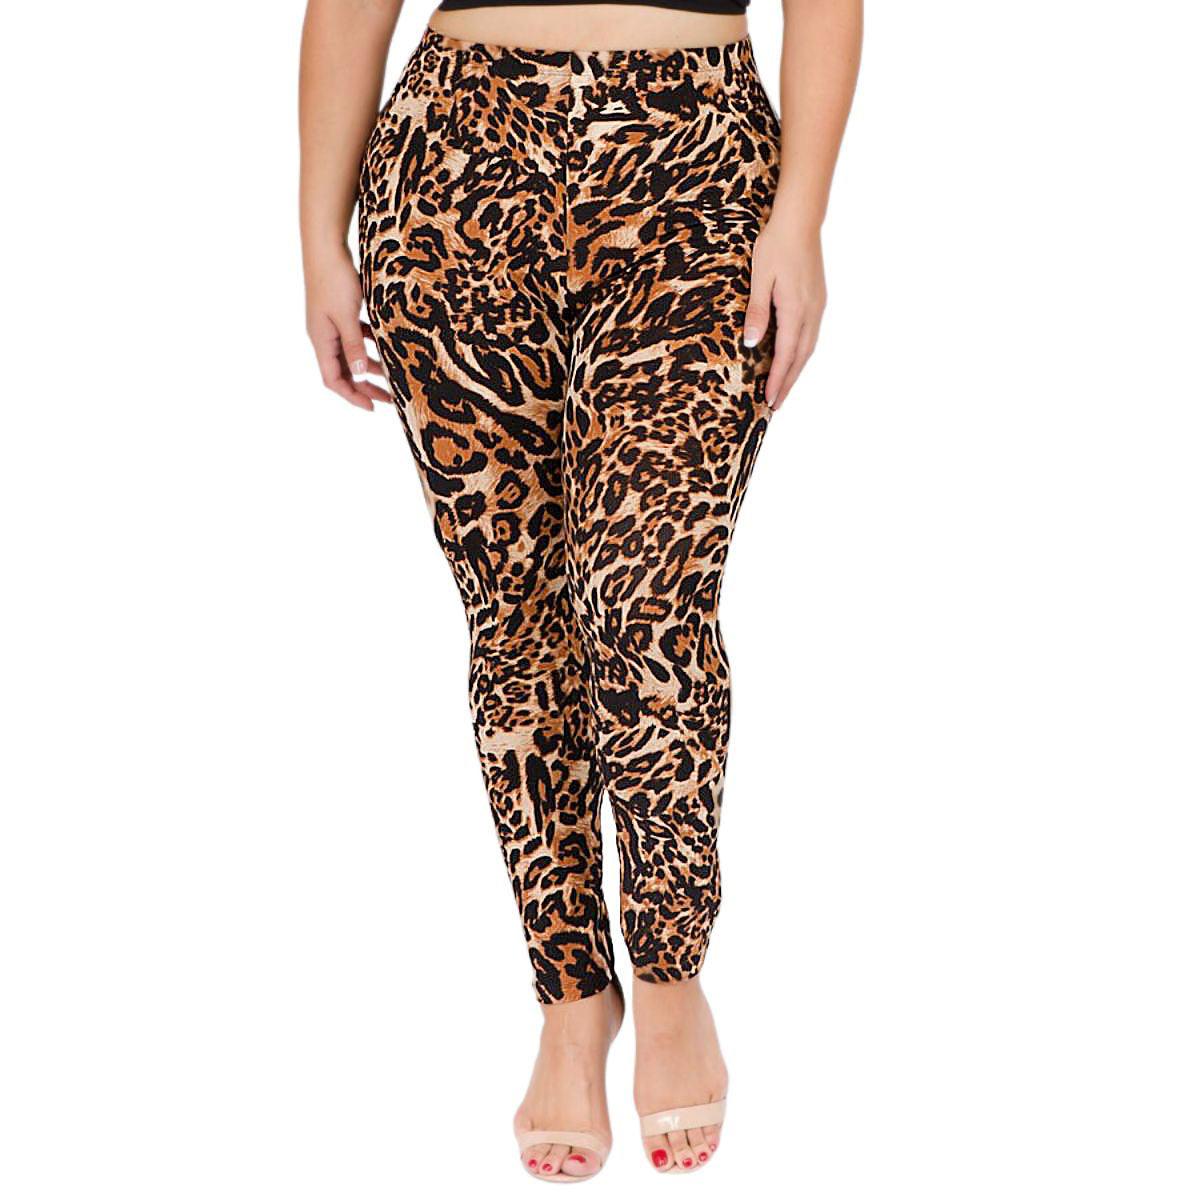 Roar in Style: Trendy Plus Size Leopard Print Leggings - Buy Now!